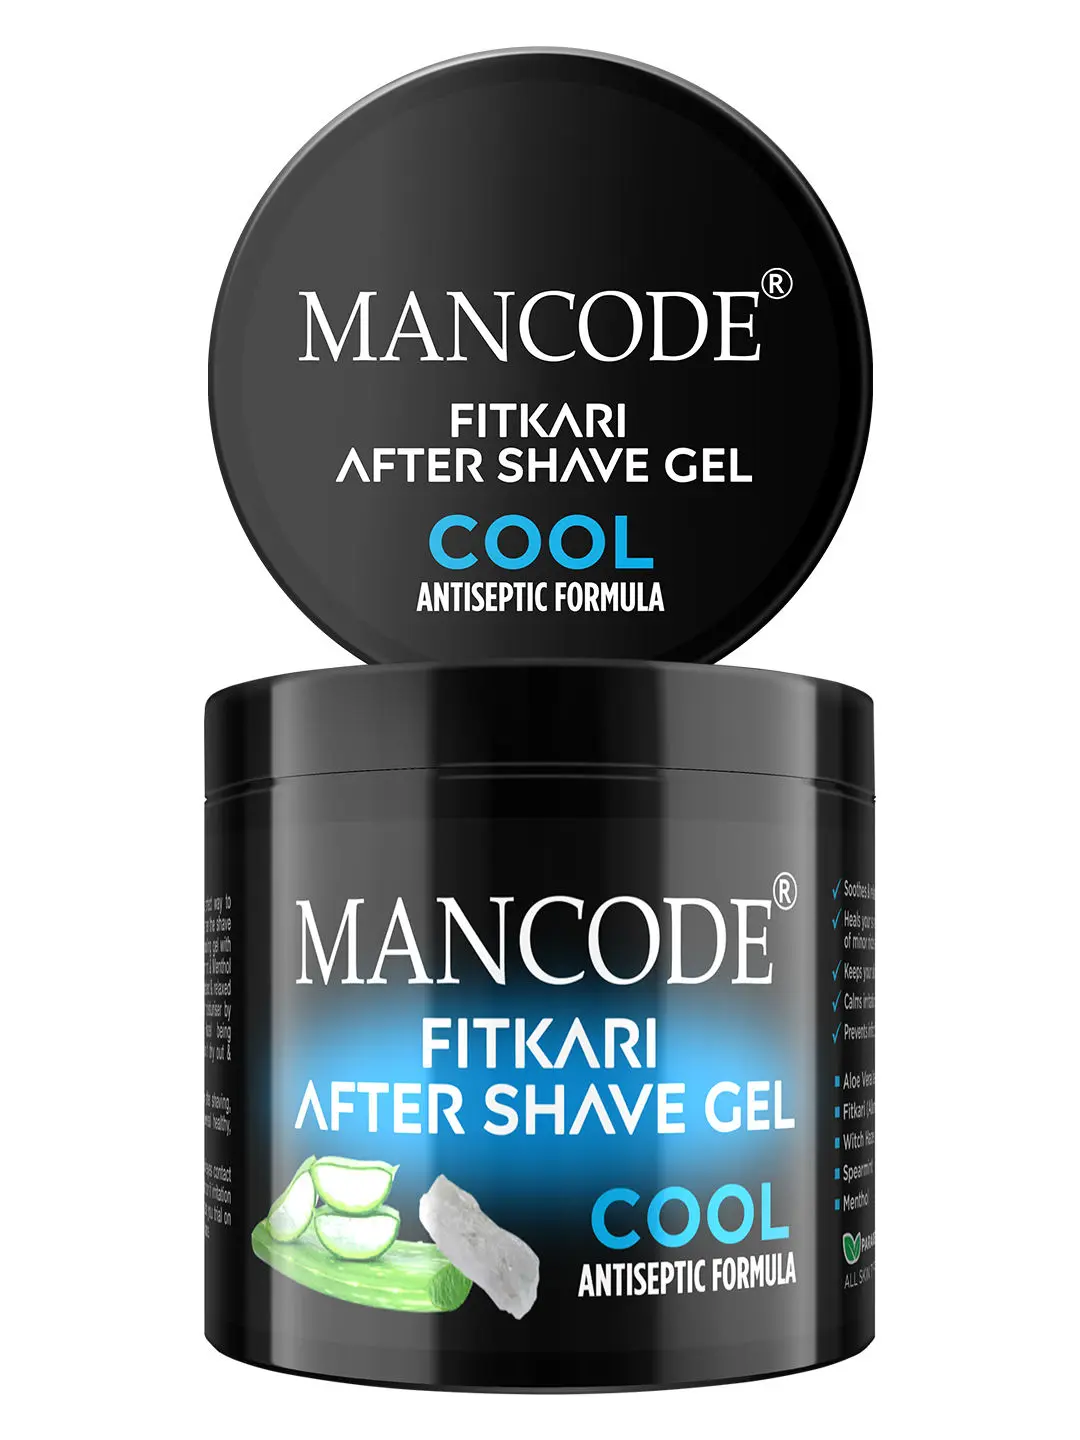 Mancode Fitkari After Shave Gel for Men Cool Antiseptic Formula (100 g)